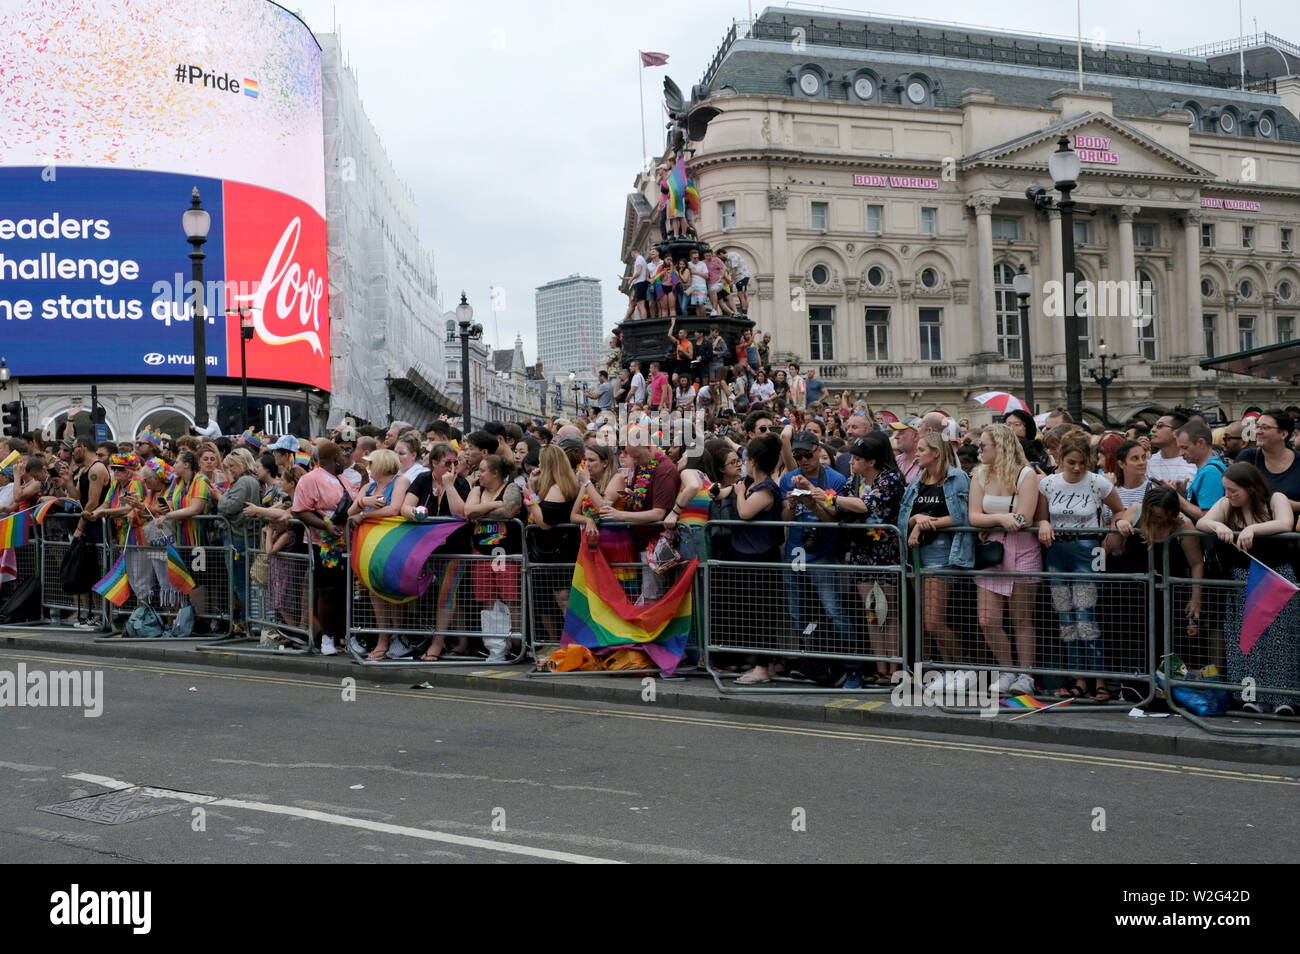 Nachtschwärmer warten auf die Parade. Tausende von Nachtschwärmern gefüllt Londons Straßen mit Farbe Stolz in der Hauptstadt zu feiern. 2019 markierte den 50. Jahrestag der Stonewall Riots in New York City, als Ursprung der Stolz und die LGBT + rechte Bewegung angesehen. Stockfoto